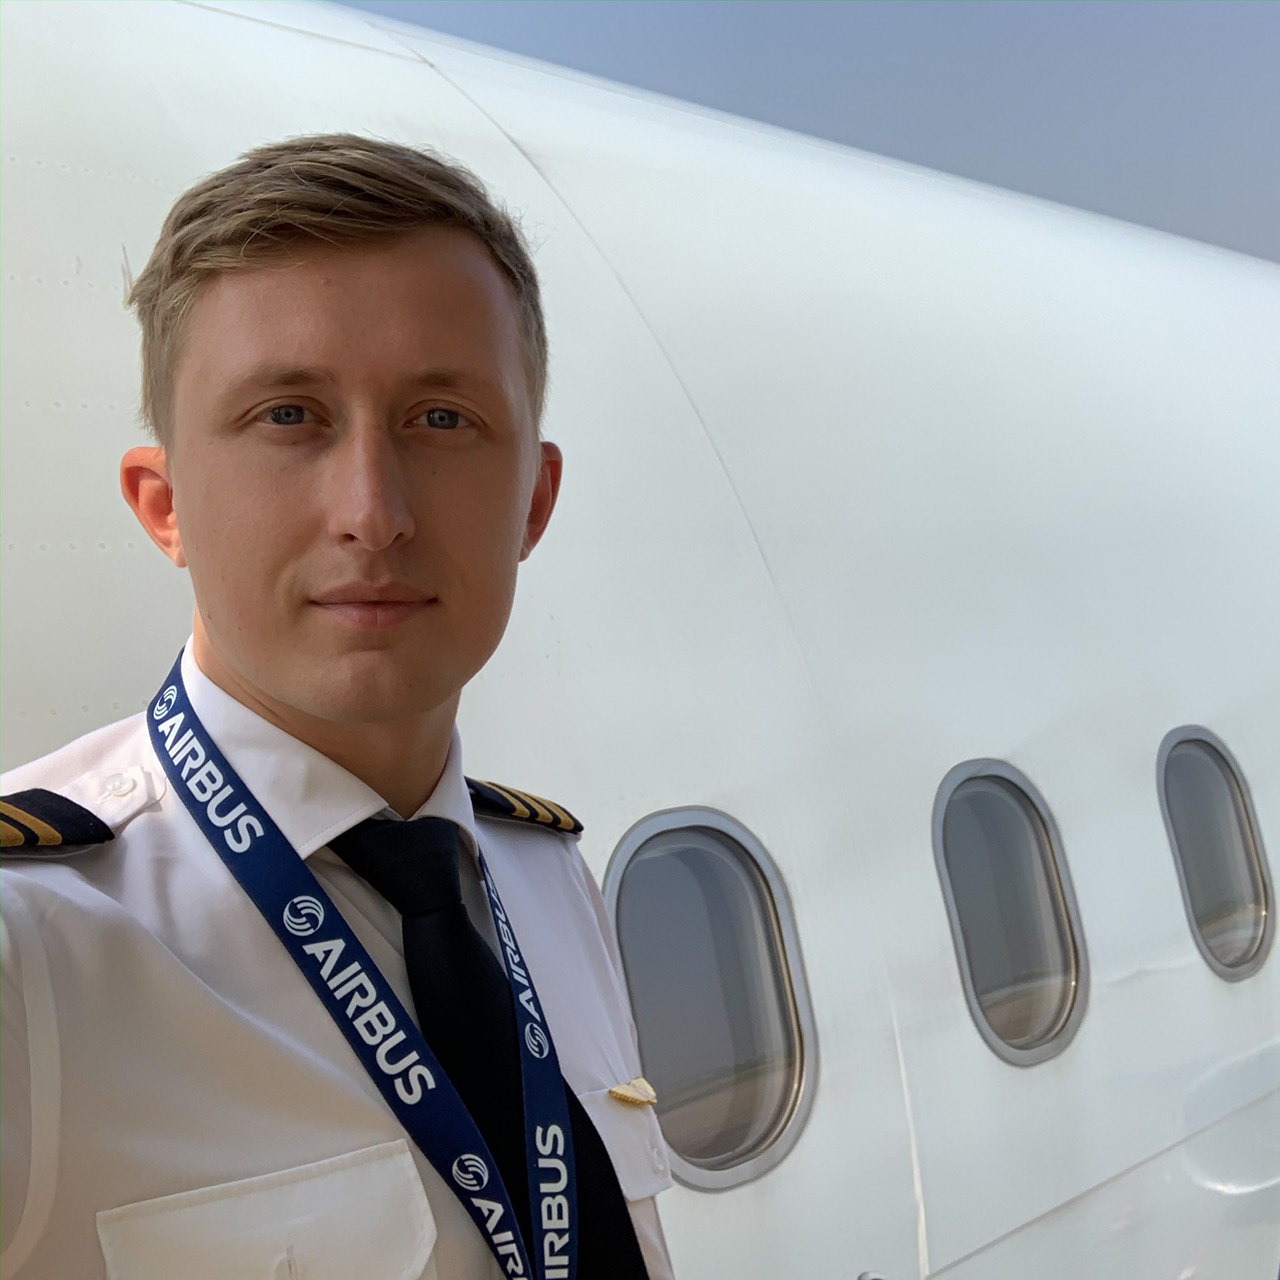 Форма пилота гражданской авиации россии фото